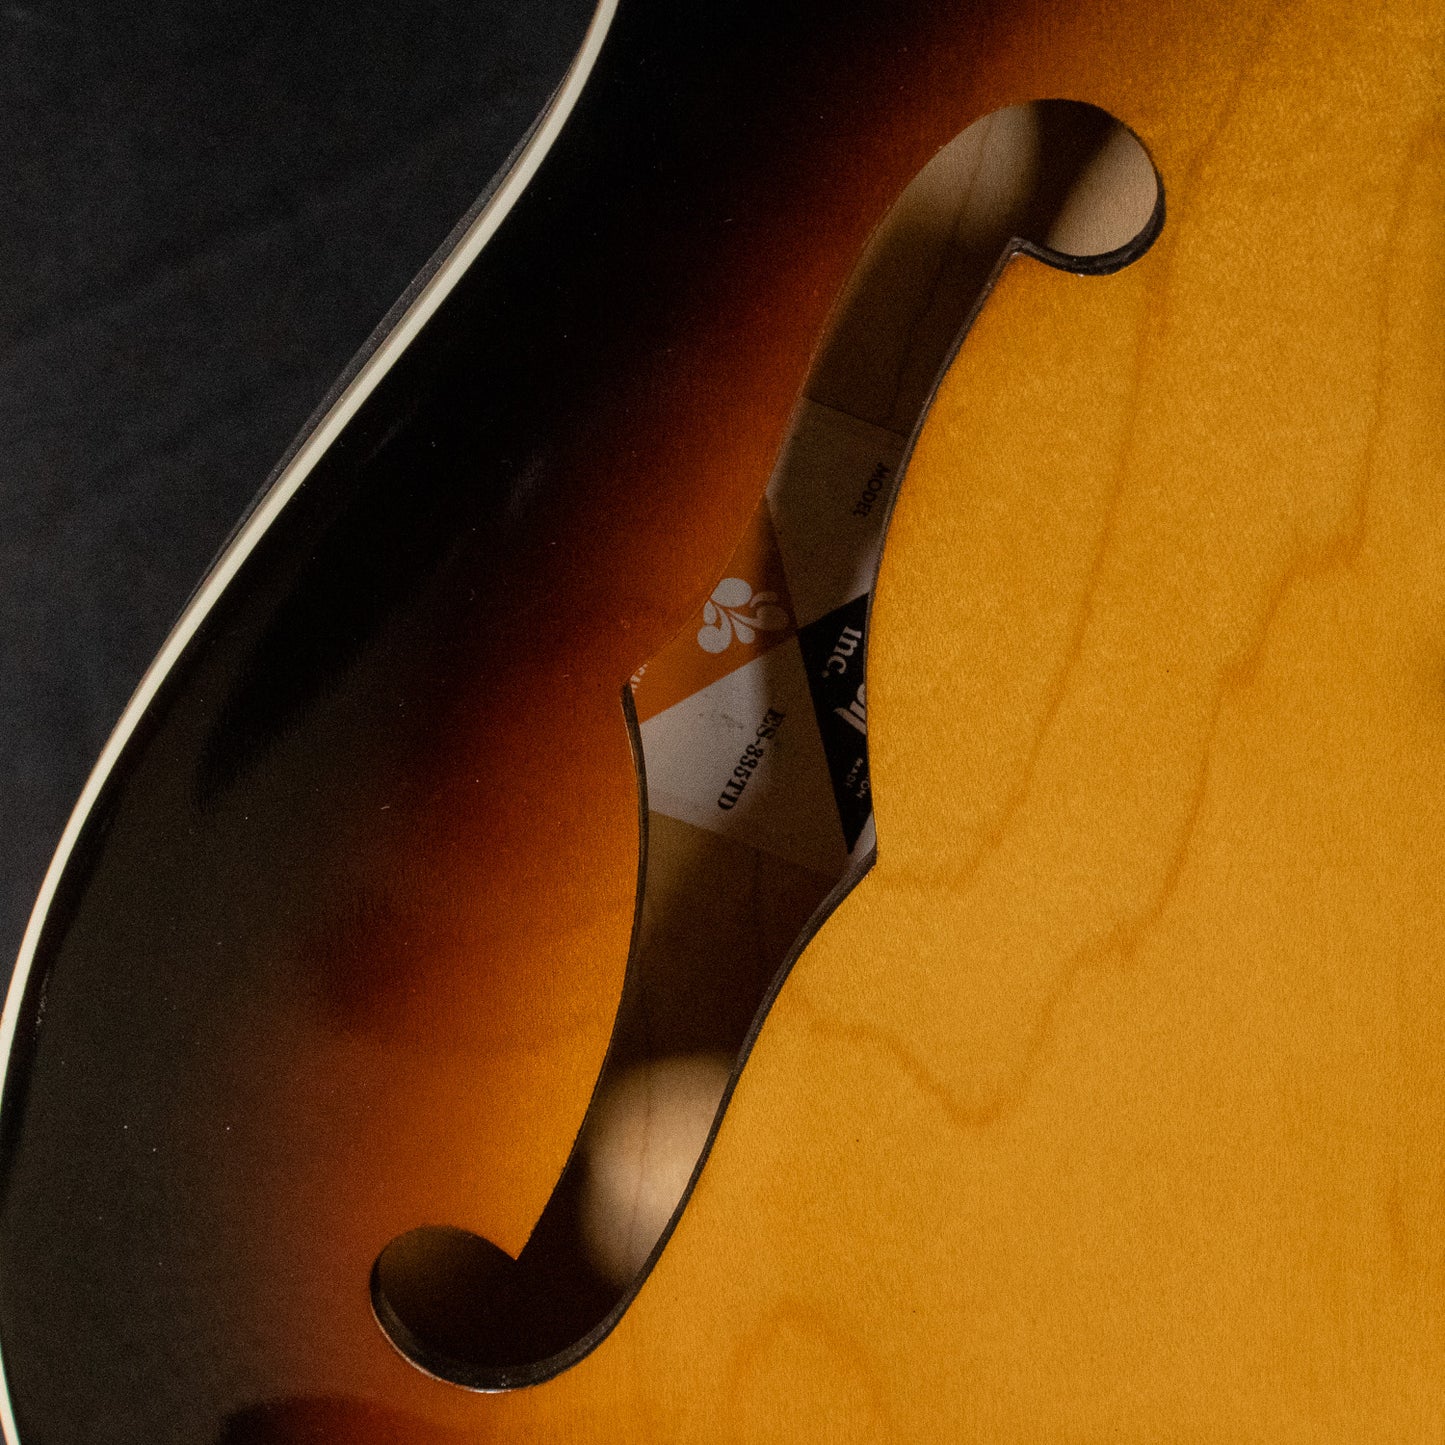 1978 Gibson ES-335